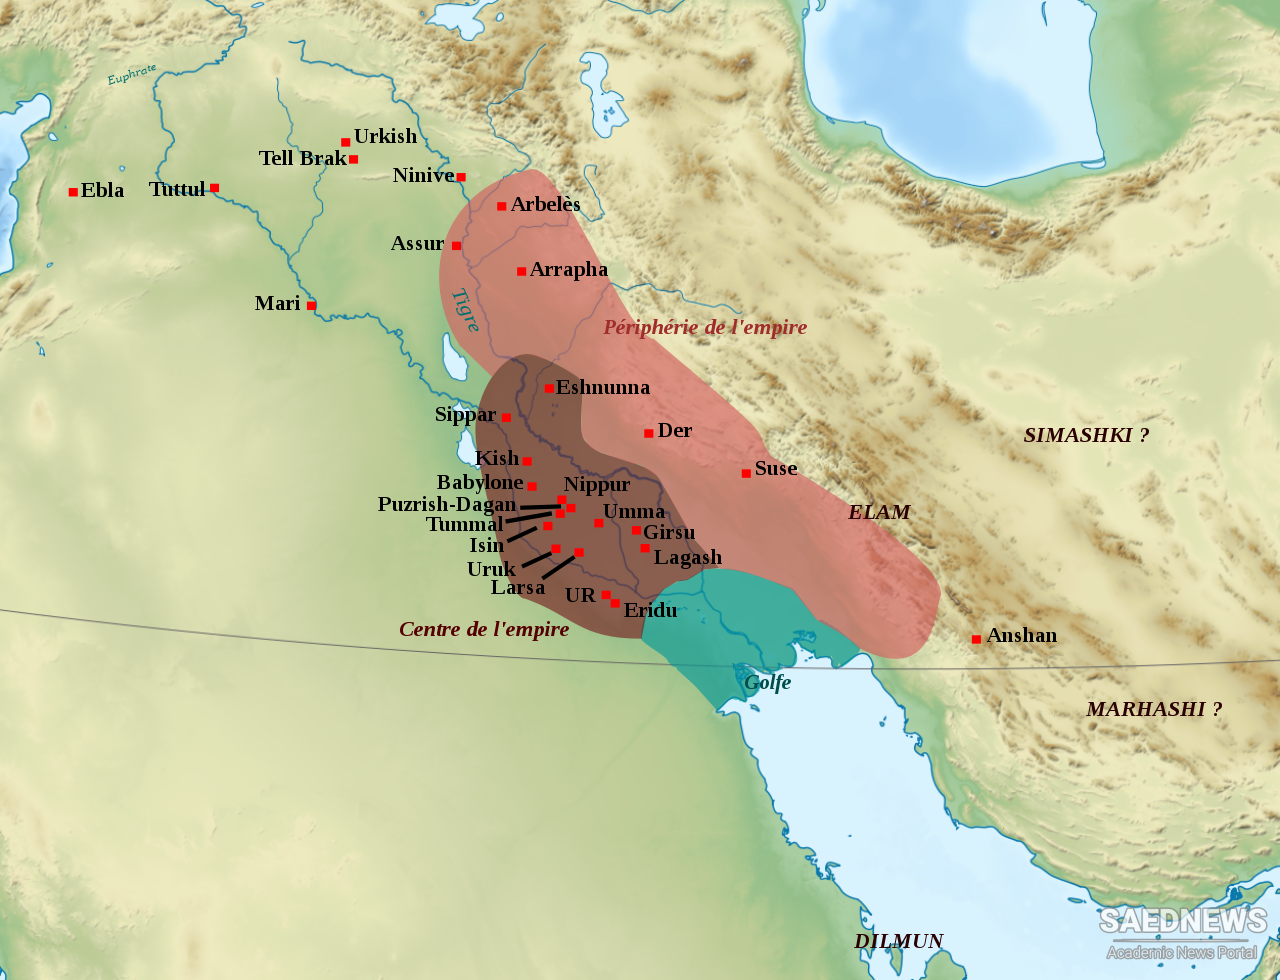 Sumerians Civilization